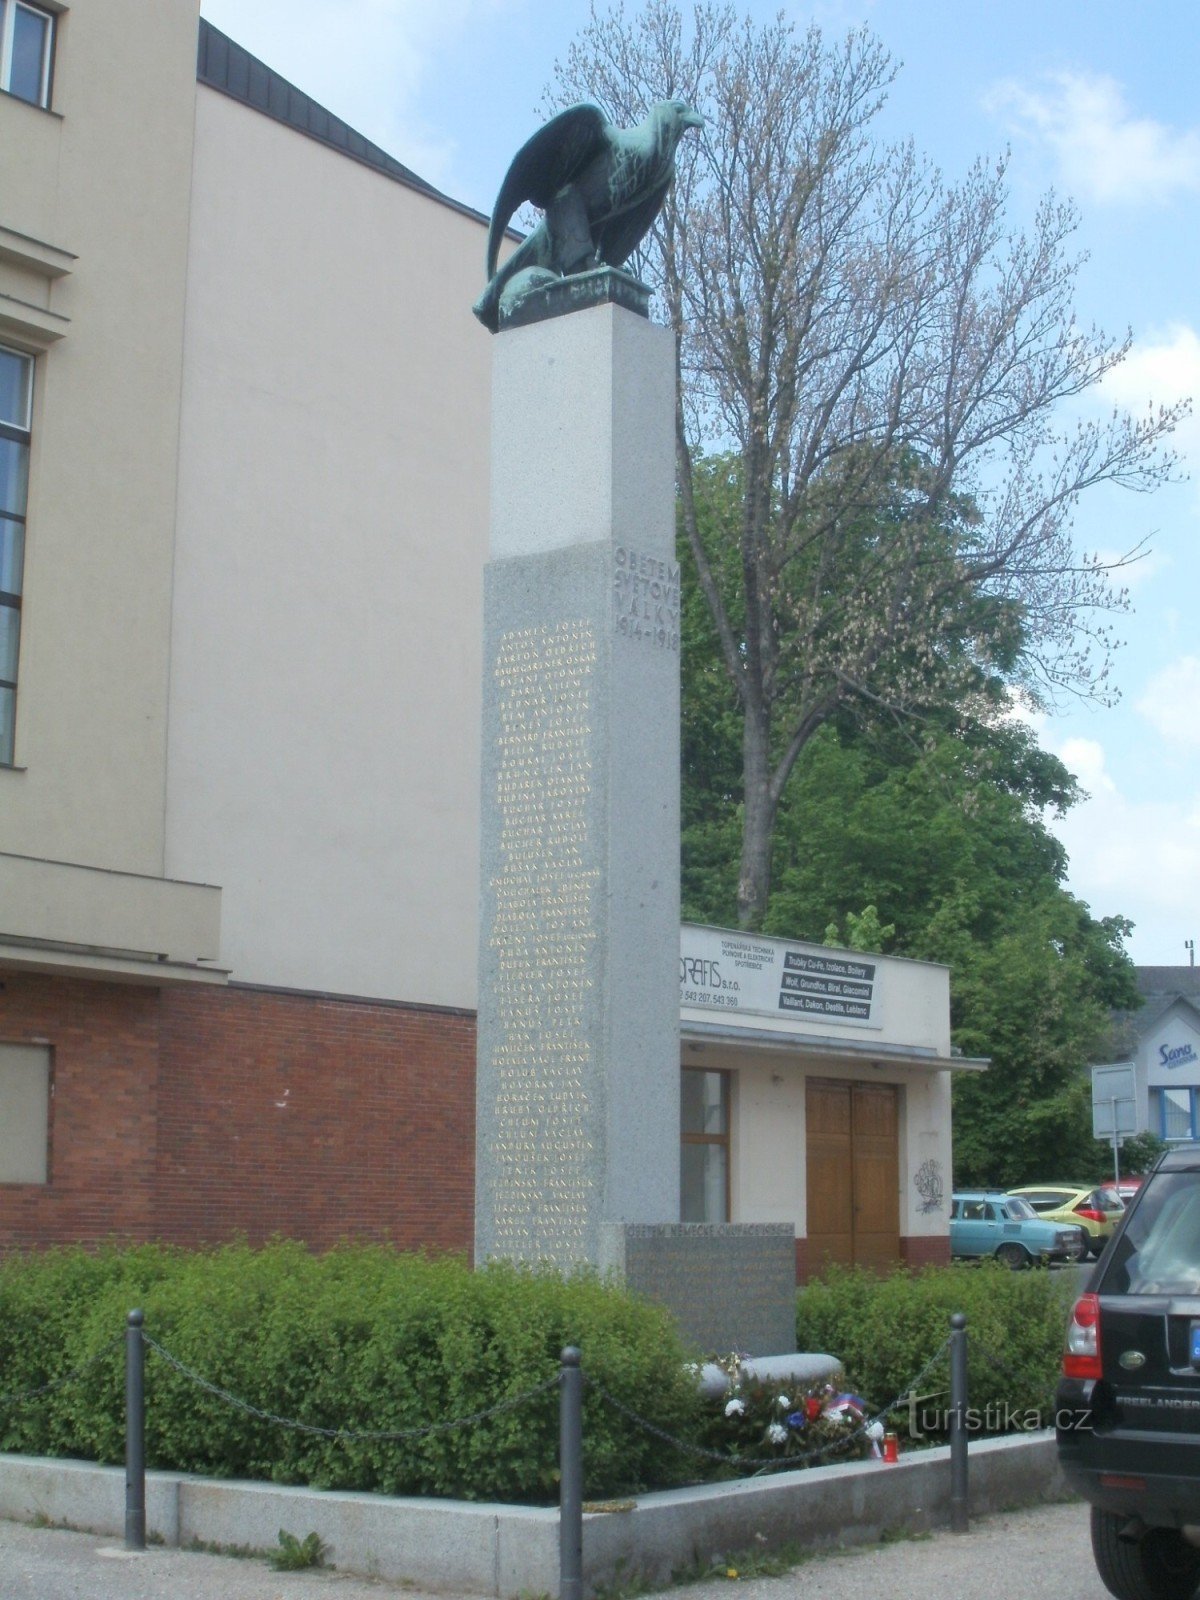 Йилемнице - памятник жертвам войн